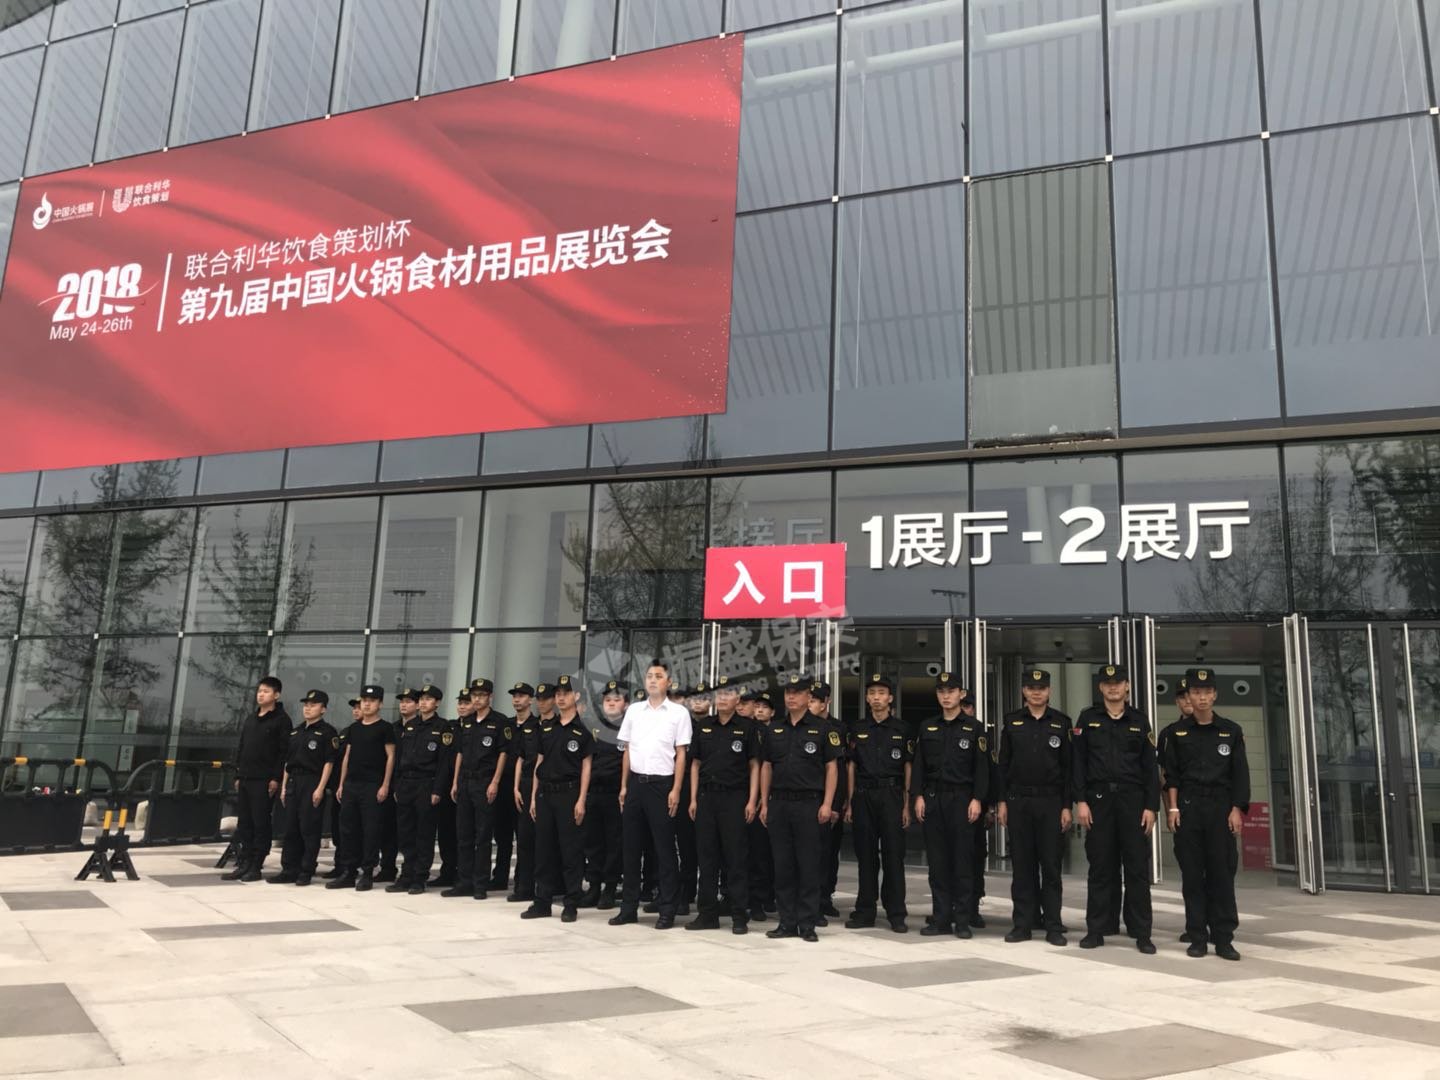 2018年西博城火锅展览会主要提供:成都保安服务公司